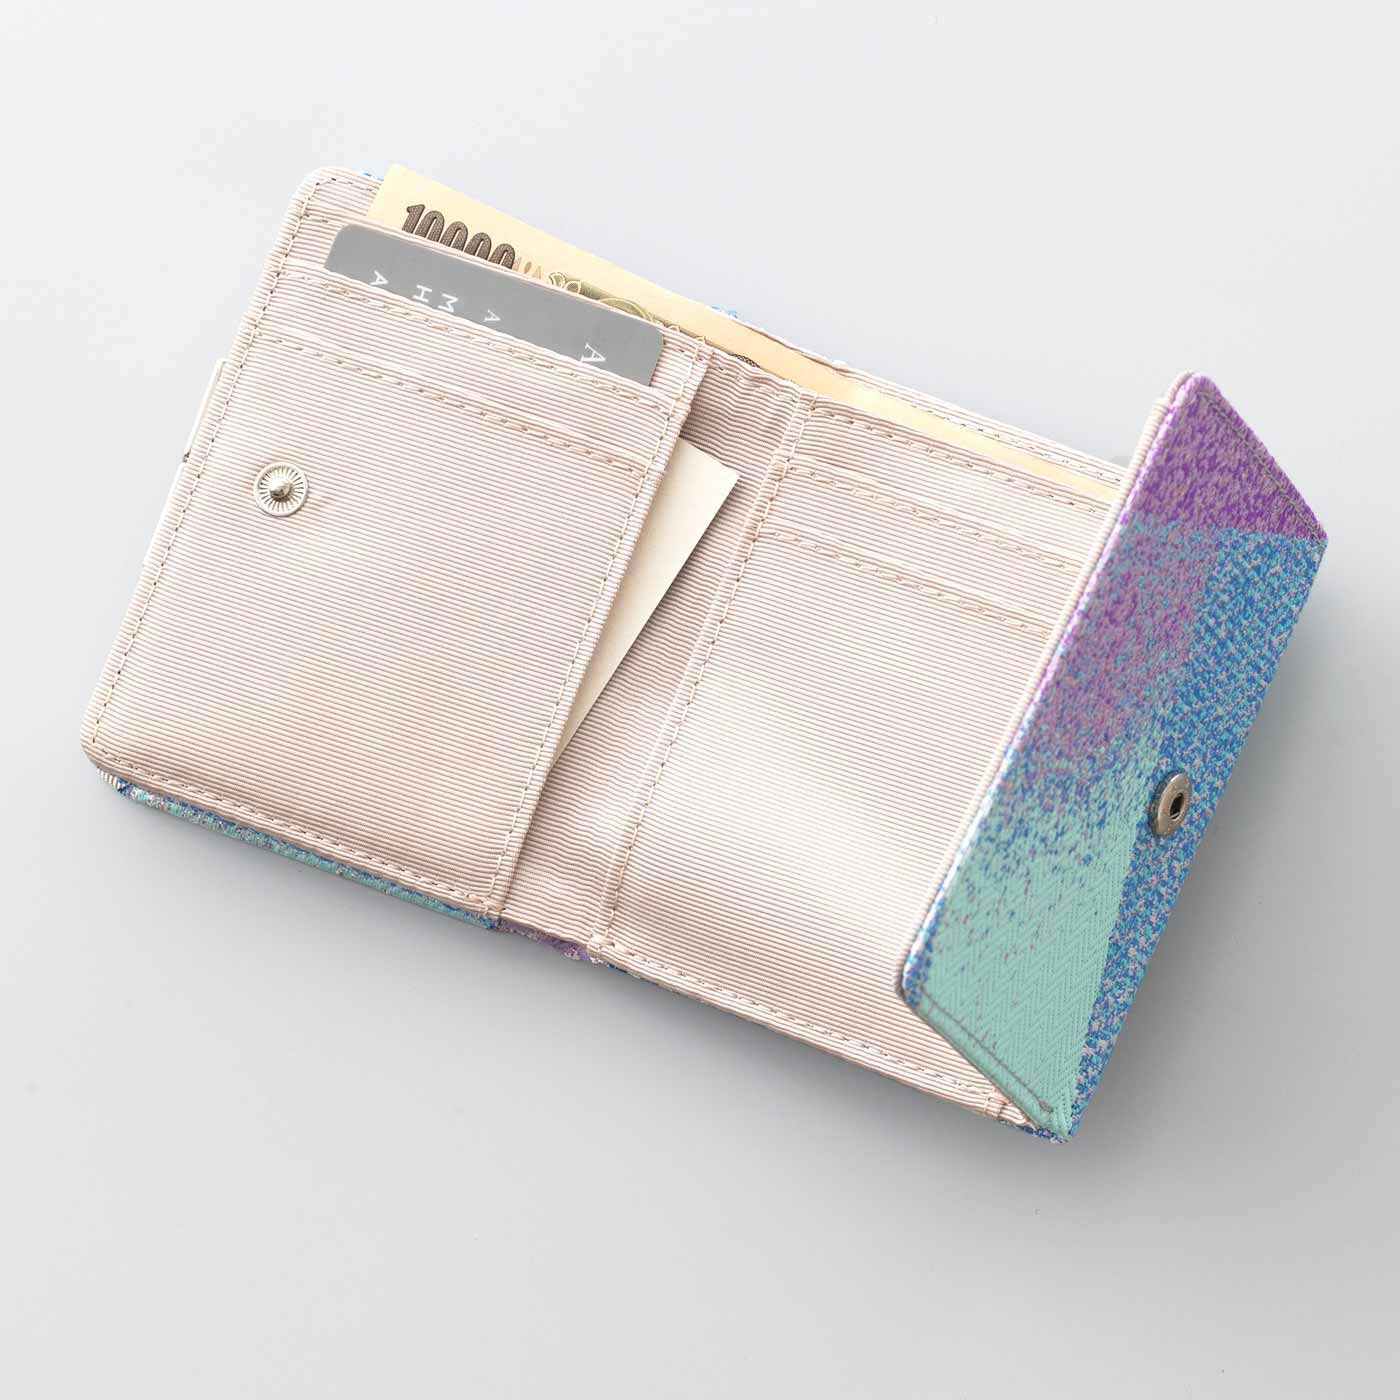 SeeMONO|特別な西陣織の生地で作った 三つ折りがま口ミニ財布|カード4枚と小物が入るポケット付き。